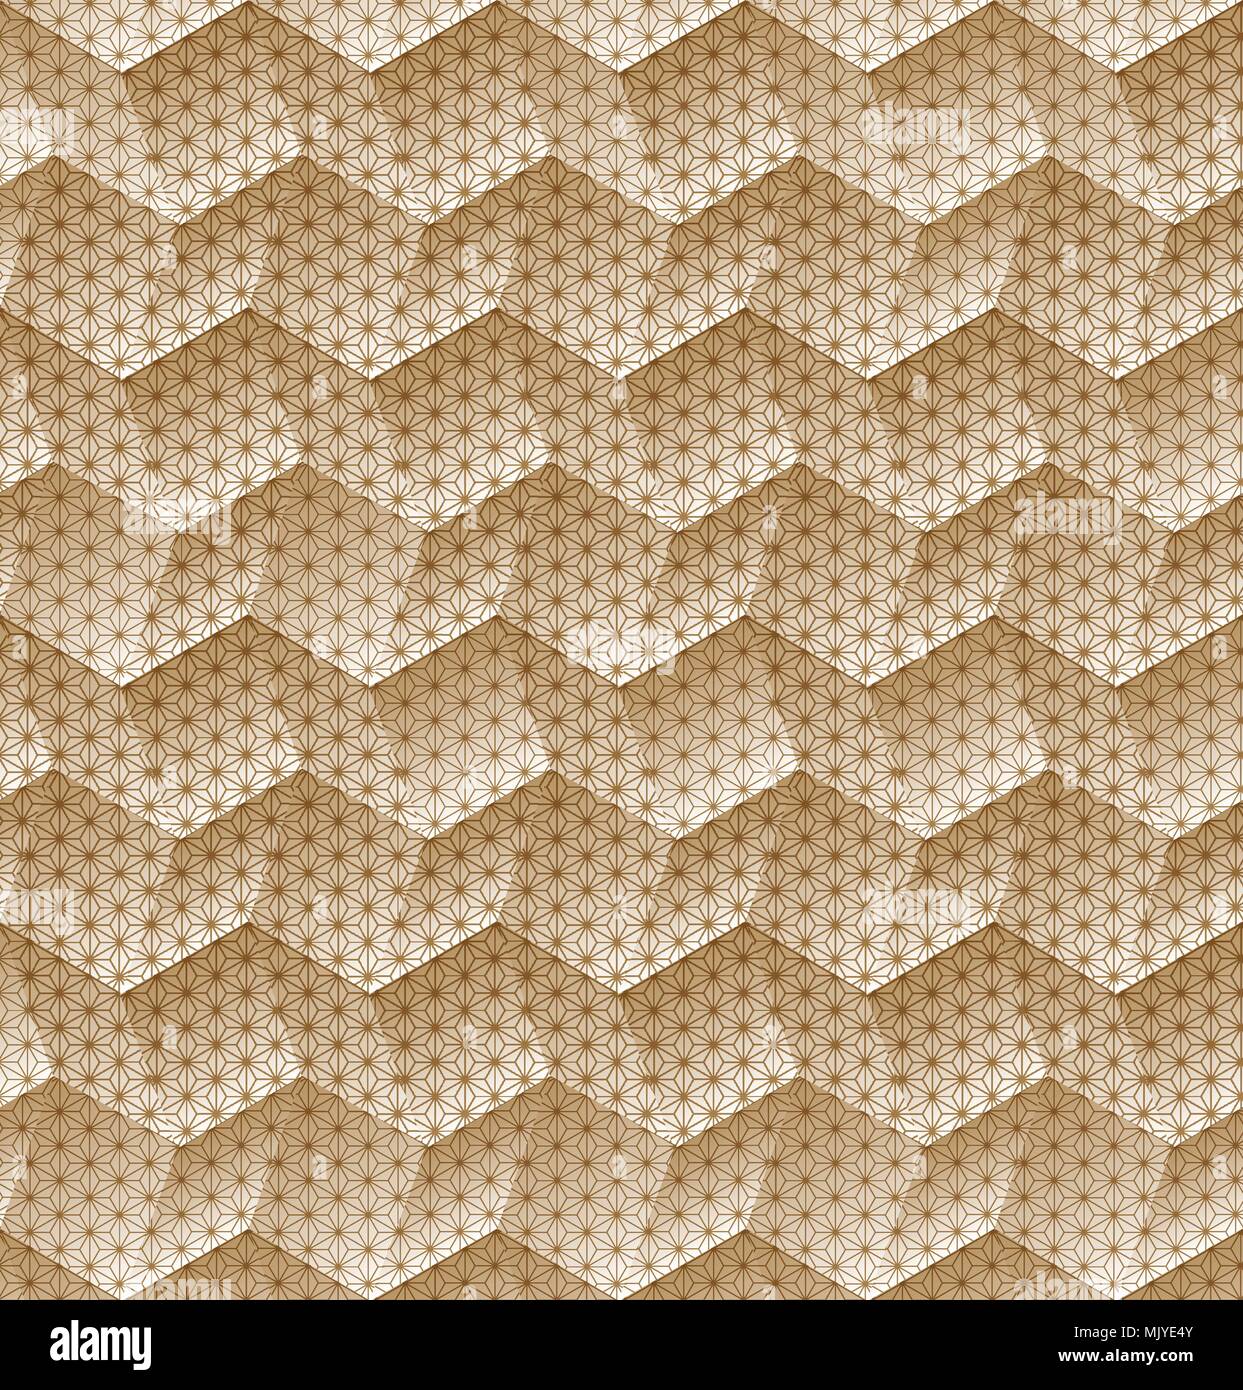 Japanische Muster Vektor mit Gold geometrischen Hintergrund für das Deckblatt Design, Template, Poster, Kulisse. Stock Vektor